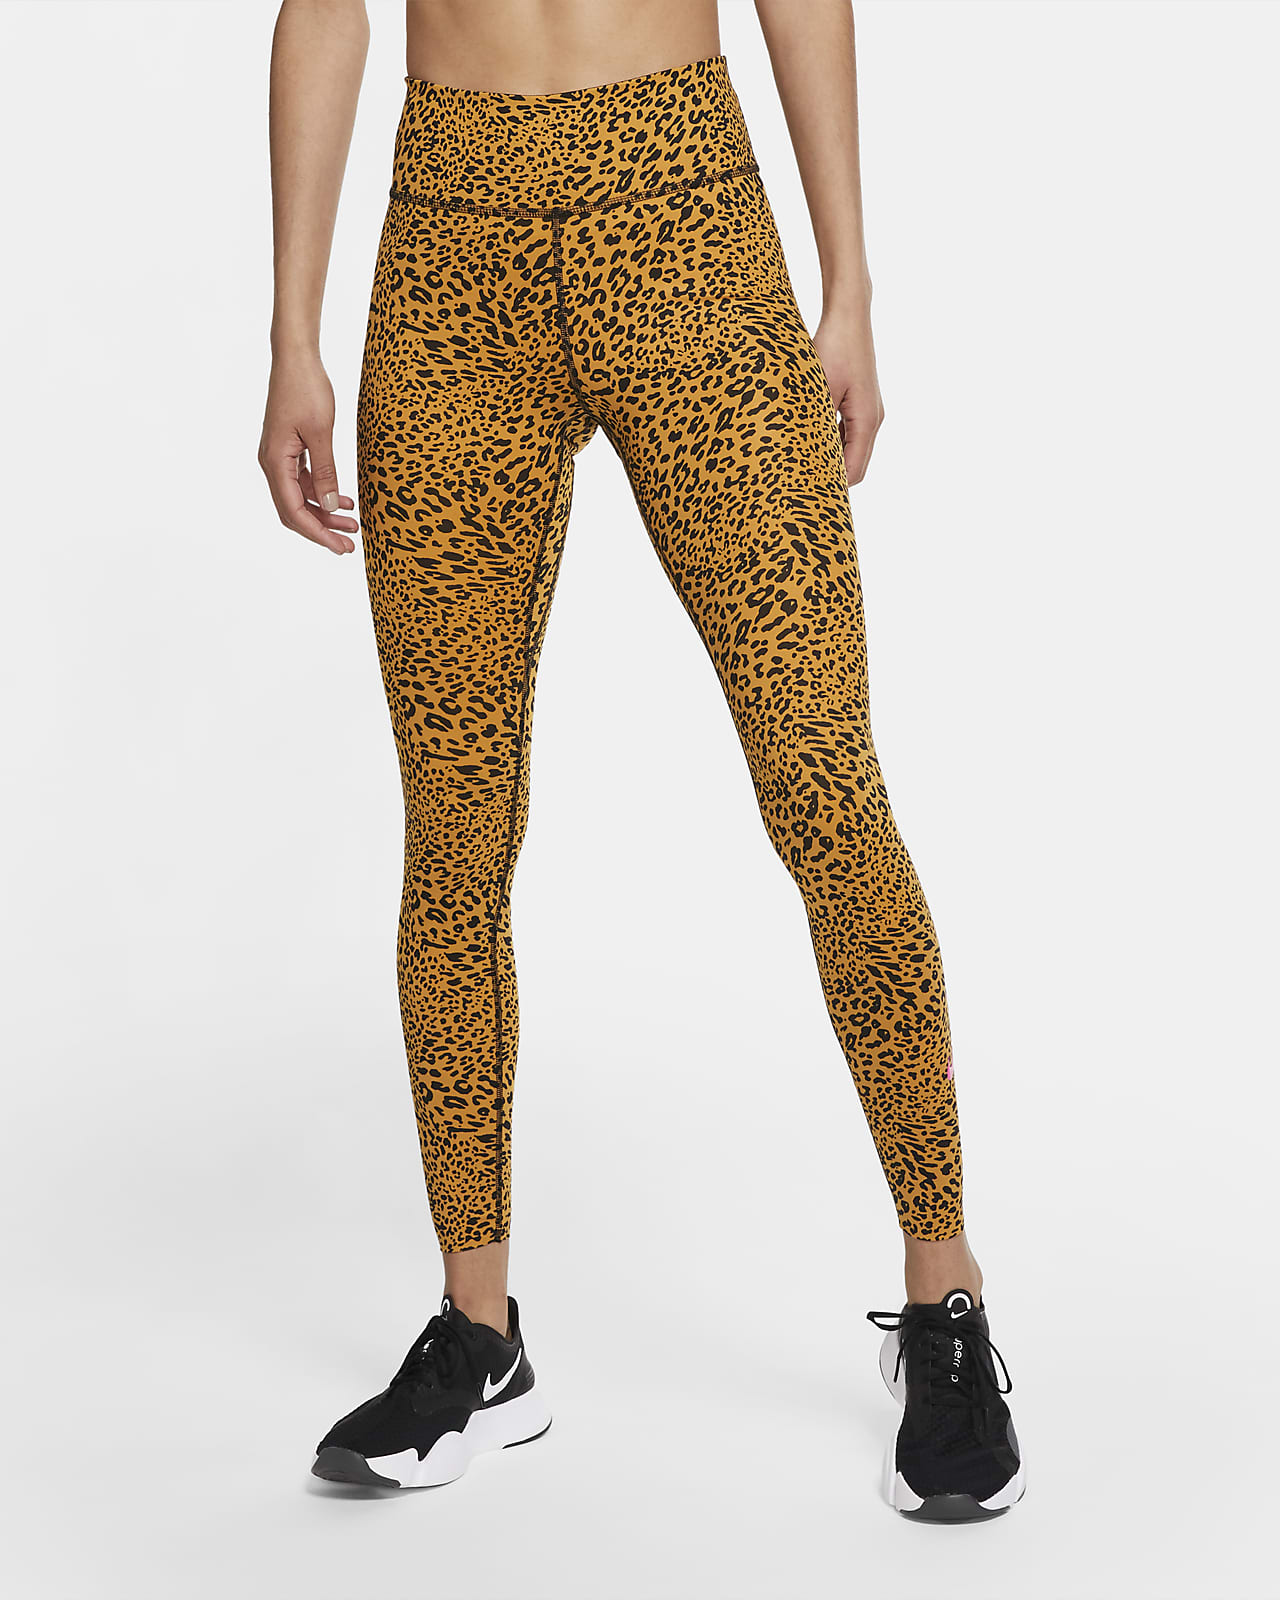 nike leopard print tights